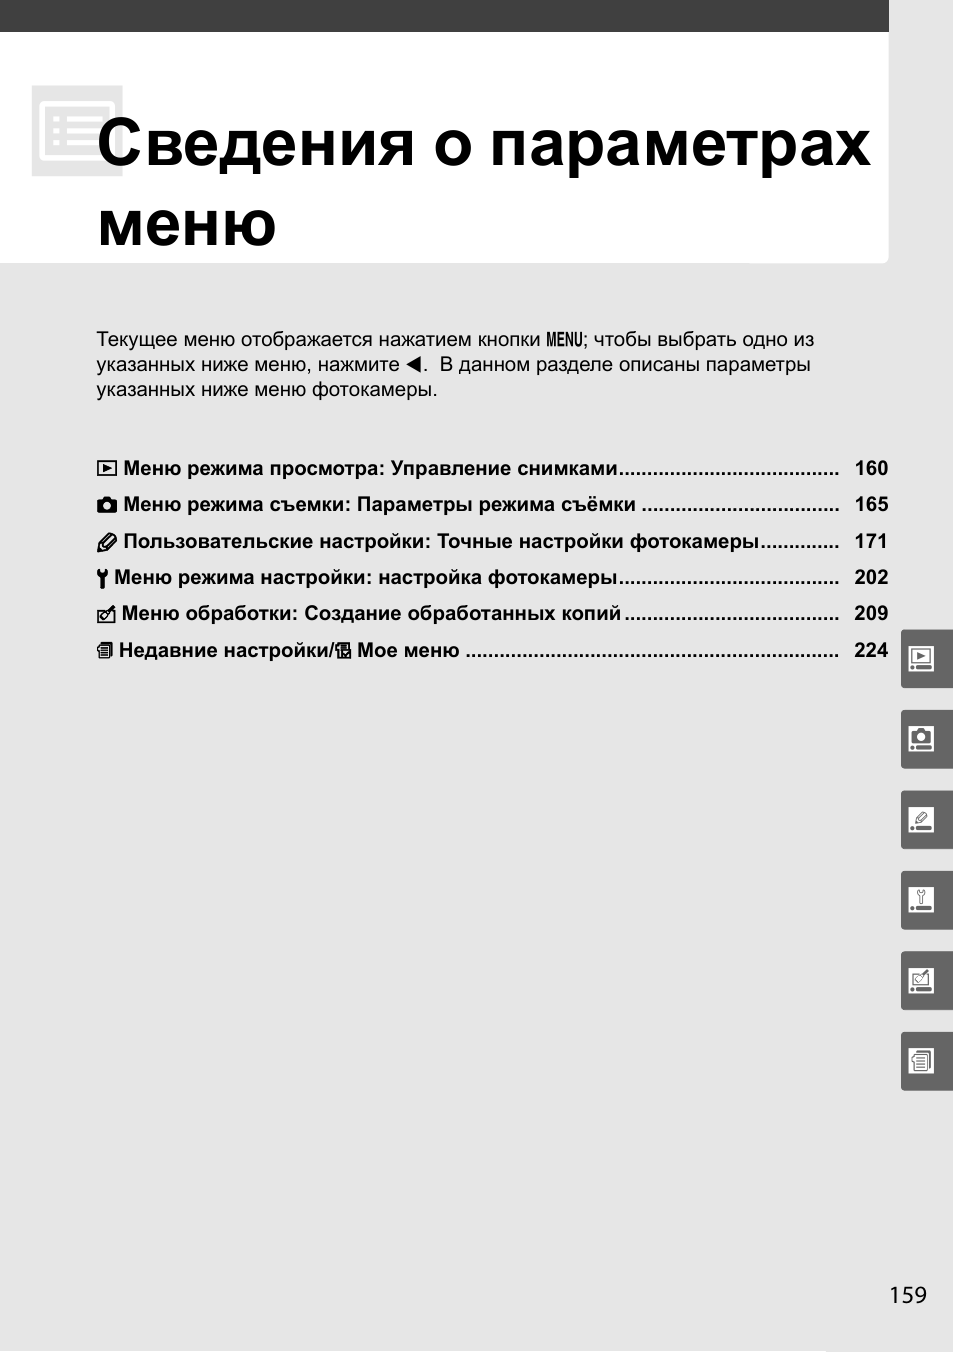 Сведения о параметрах меню | Инструкция по эксплуатации Nikon D90 | Страница 179 / 300